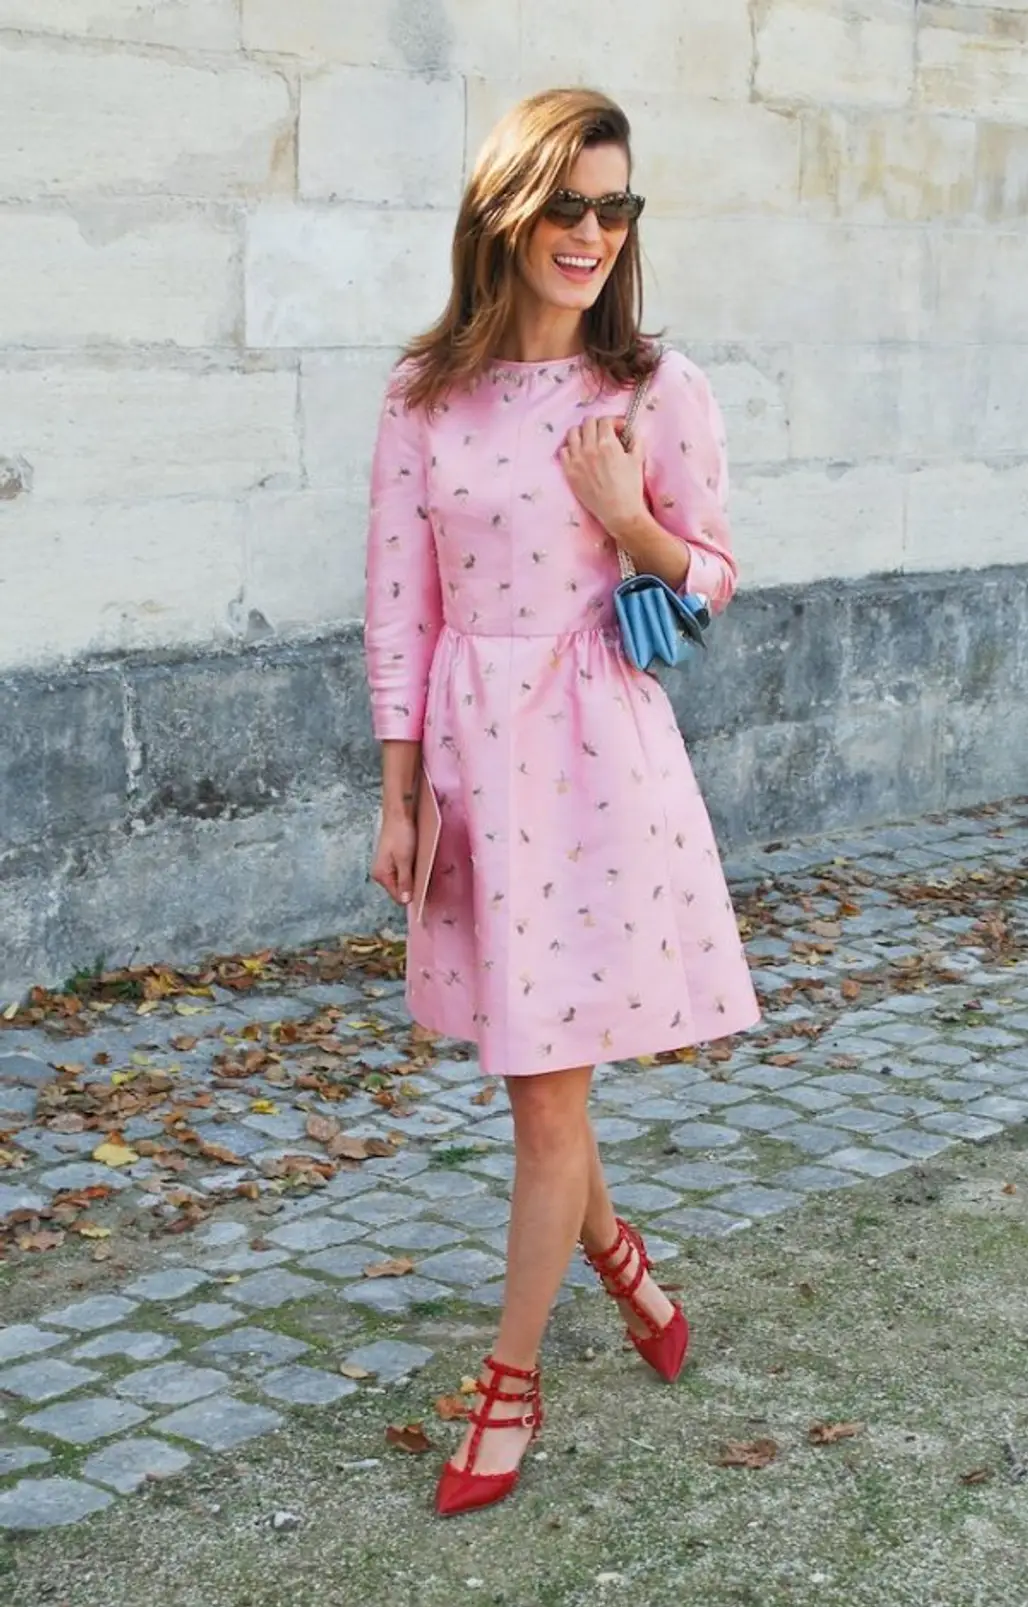 Rose Quartz Dress with a Serenity Bag